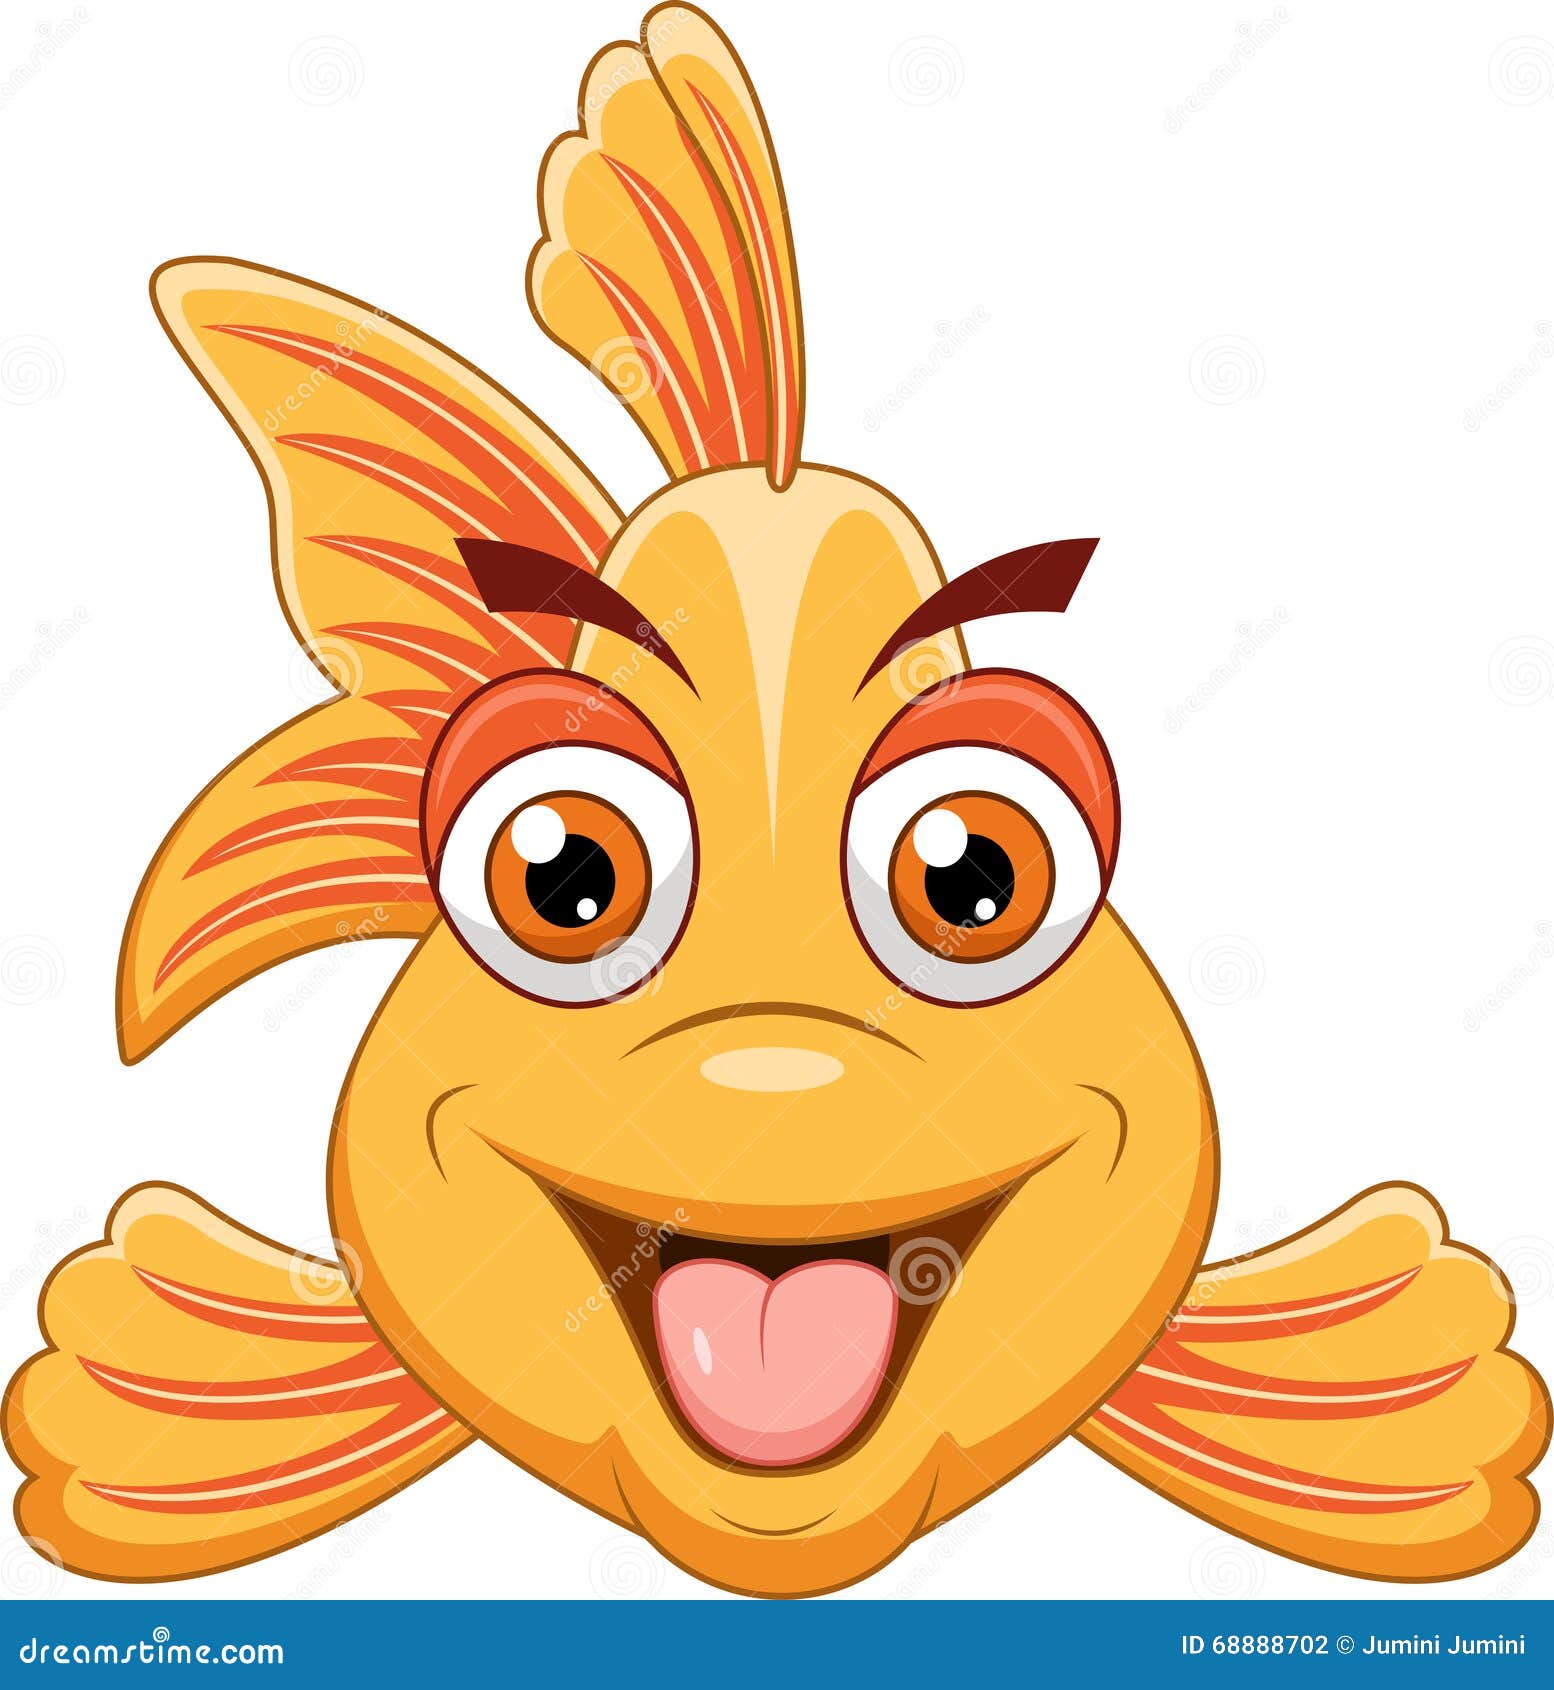 Cute Cartoon Fish Stock Illustrations – 95,797 Cute Cartoon Fish Stock  Illustrations, Vectors & Clipart - Dreamstime